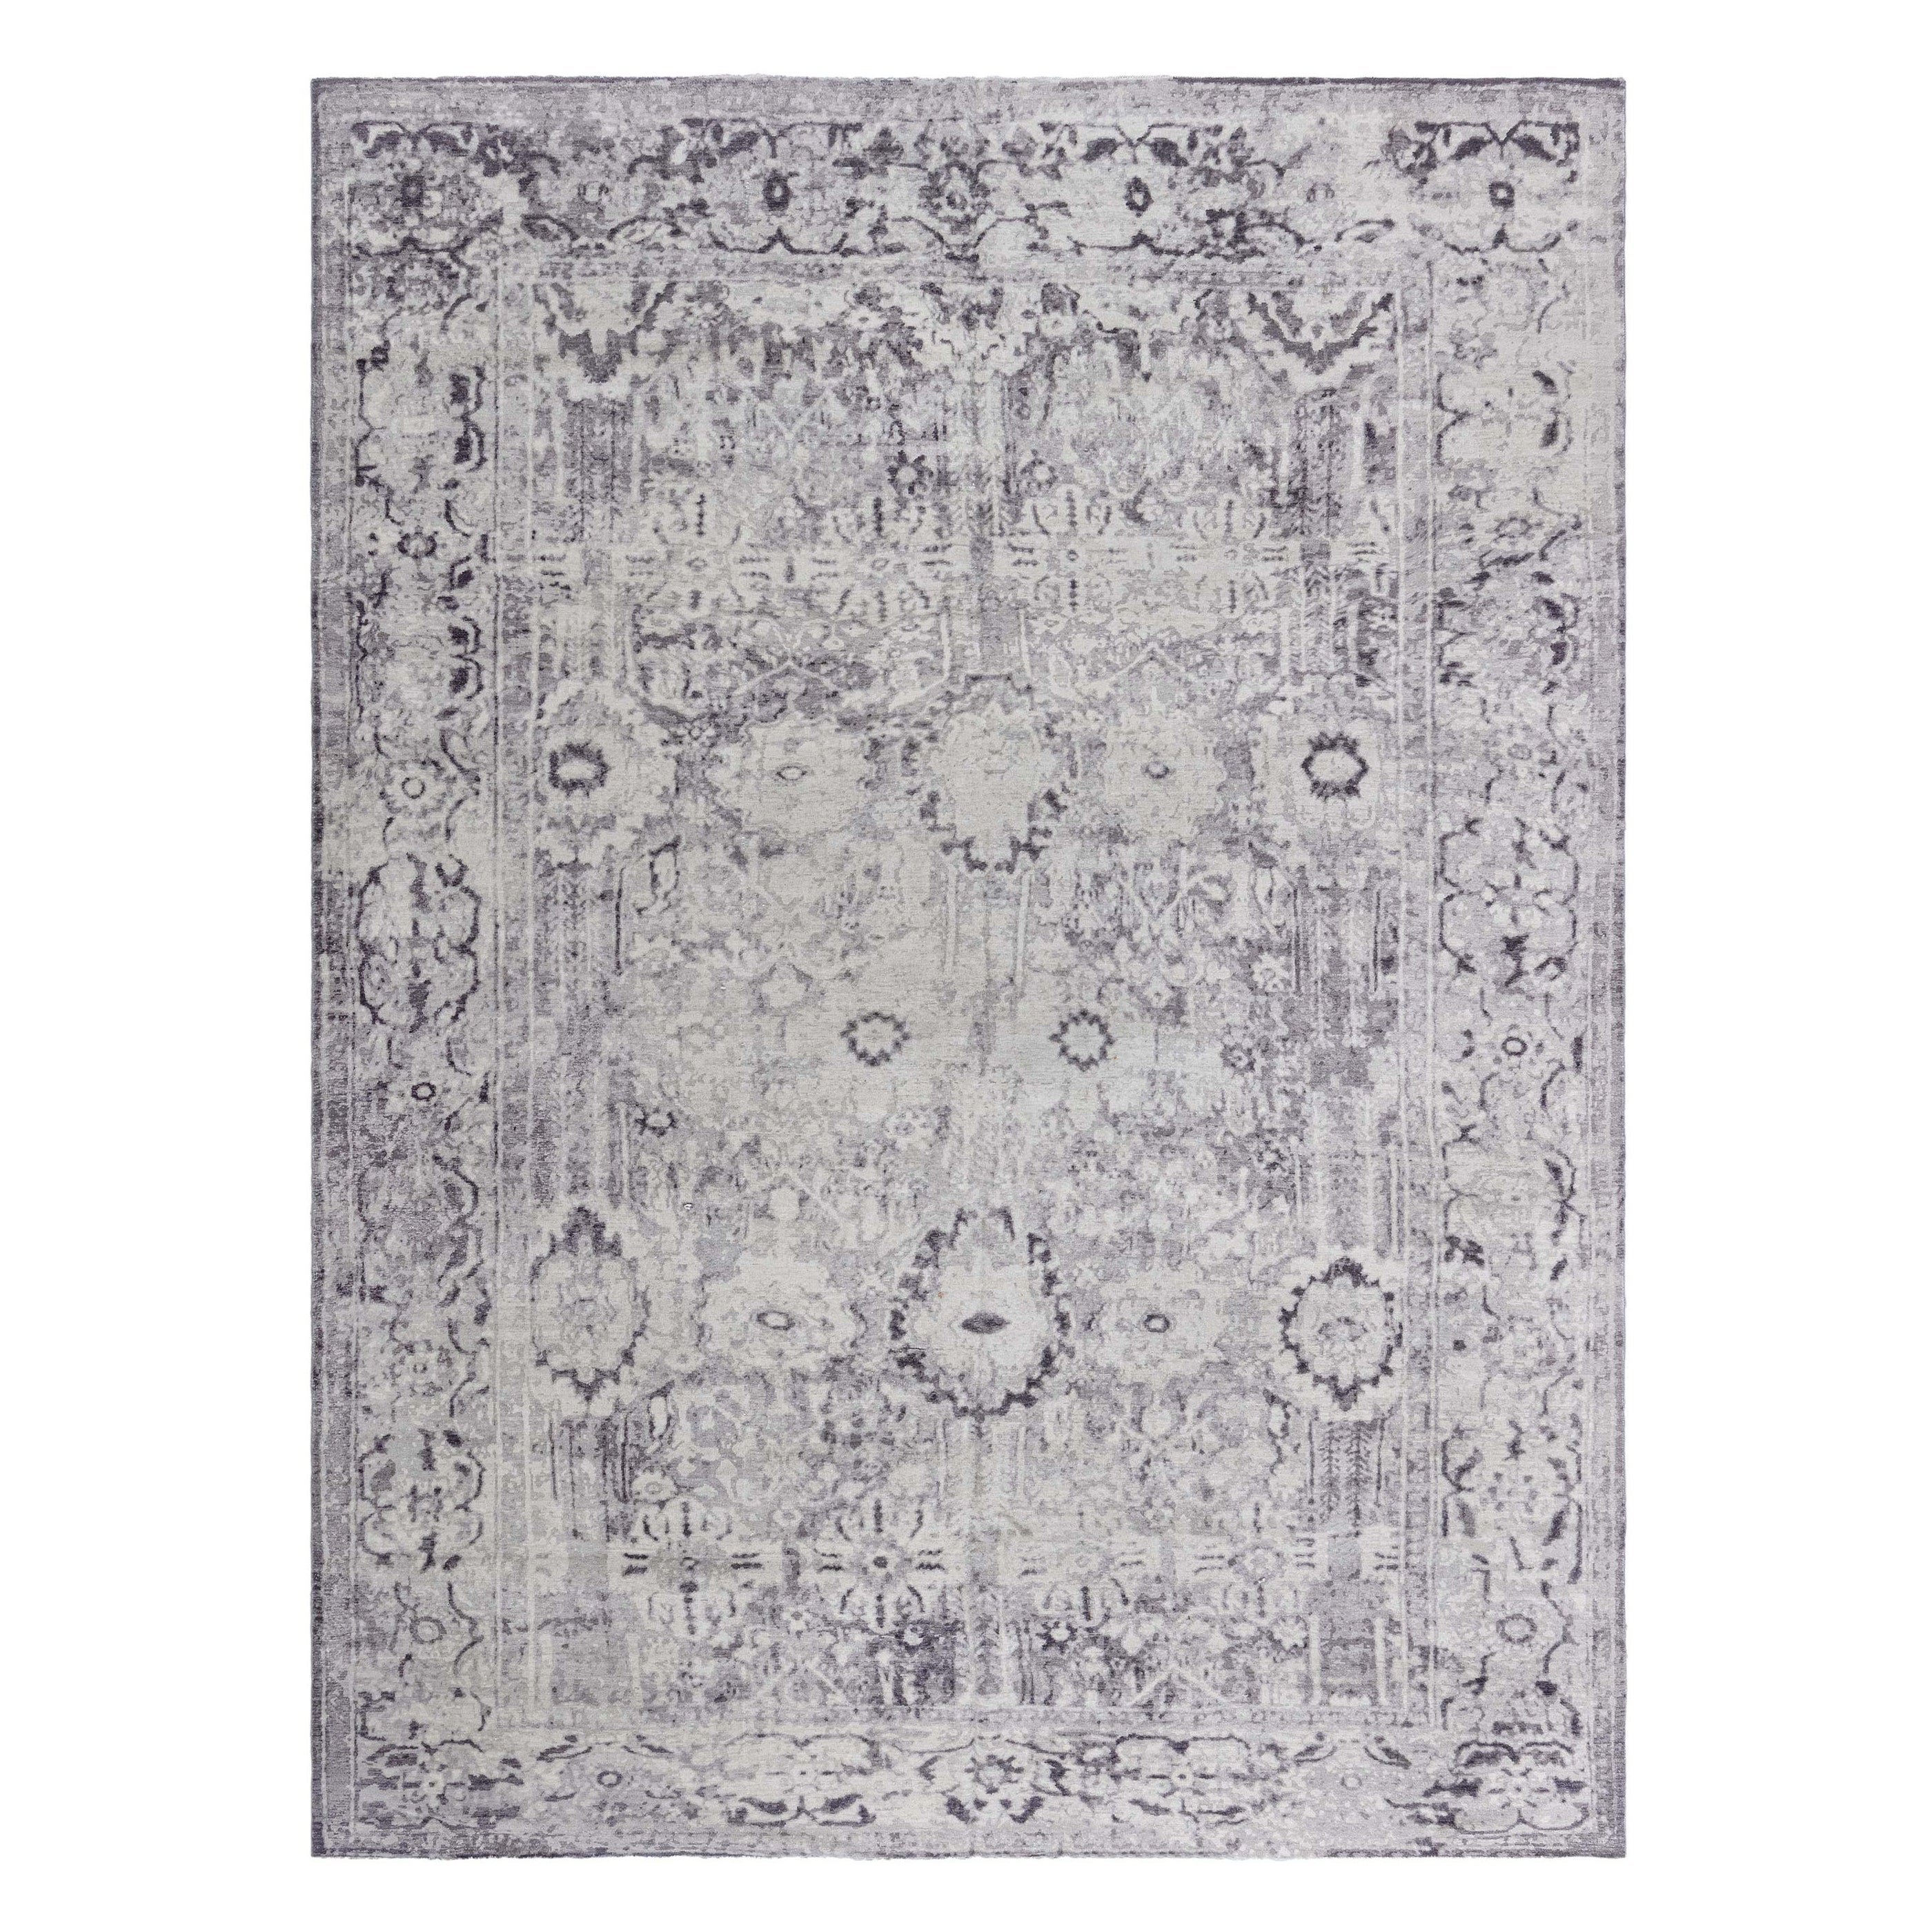 Zeitgenössischer handgefertigter Aubergine-Teppich aus Wolle von Doris Leslie Blau in Beige